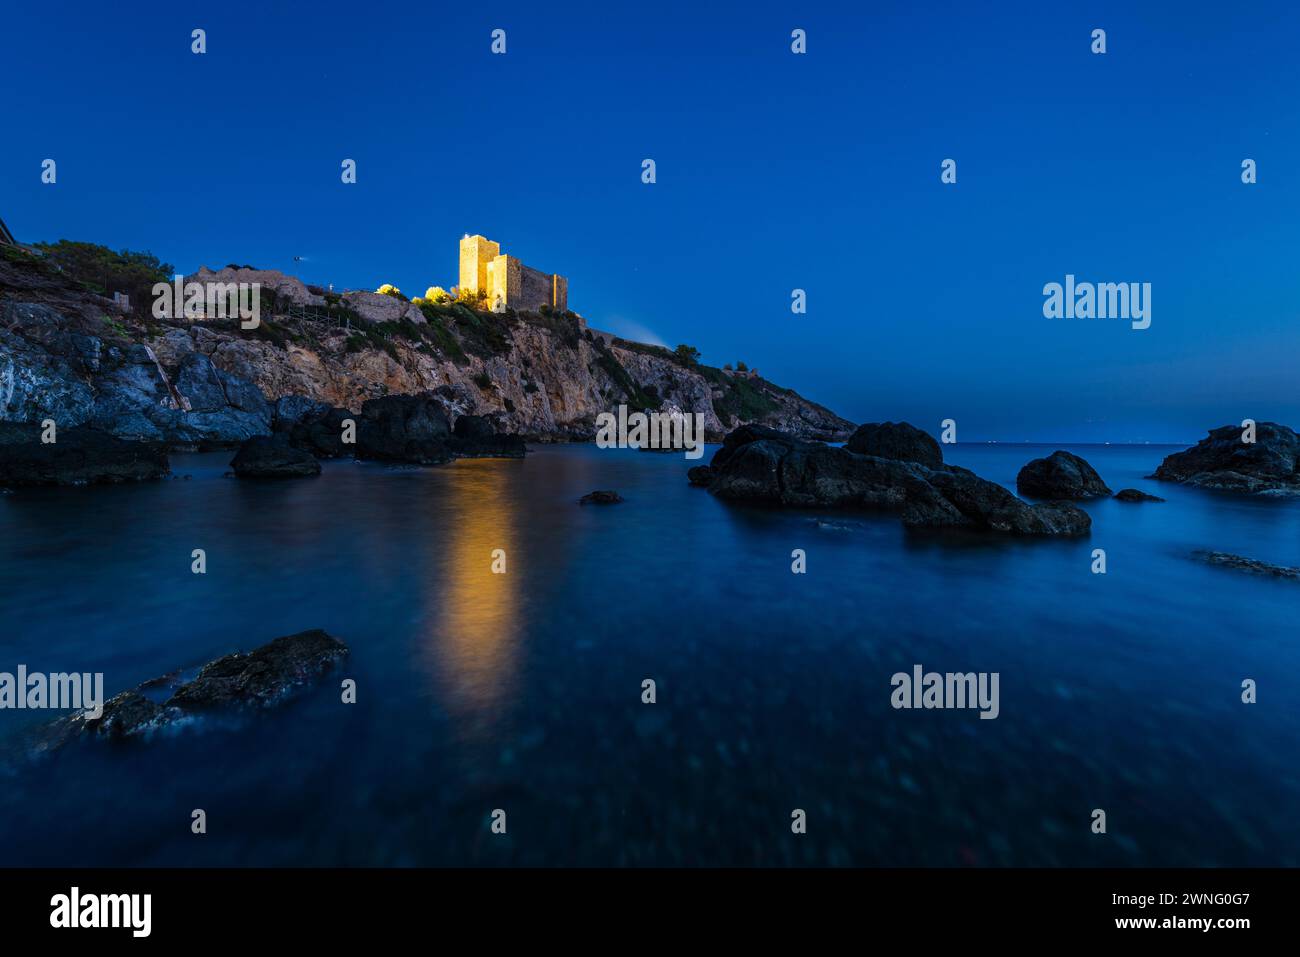 Il castello di Rocca Aldobrandesca sulla costa rocciosa della Maremma a Talamone al crepuscolo, Toscana, Italia Foto Stock